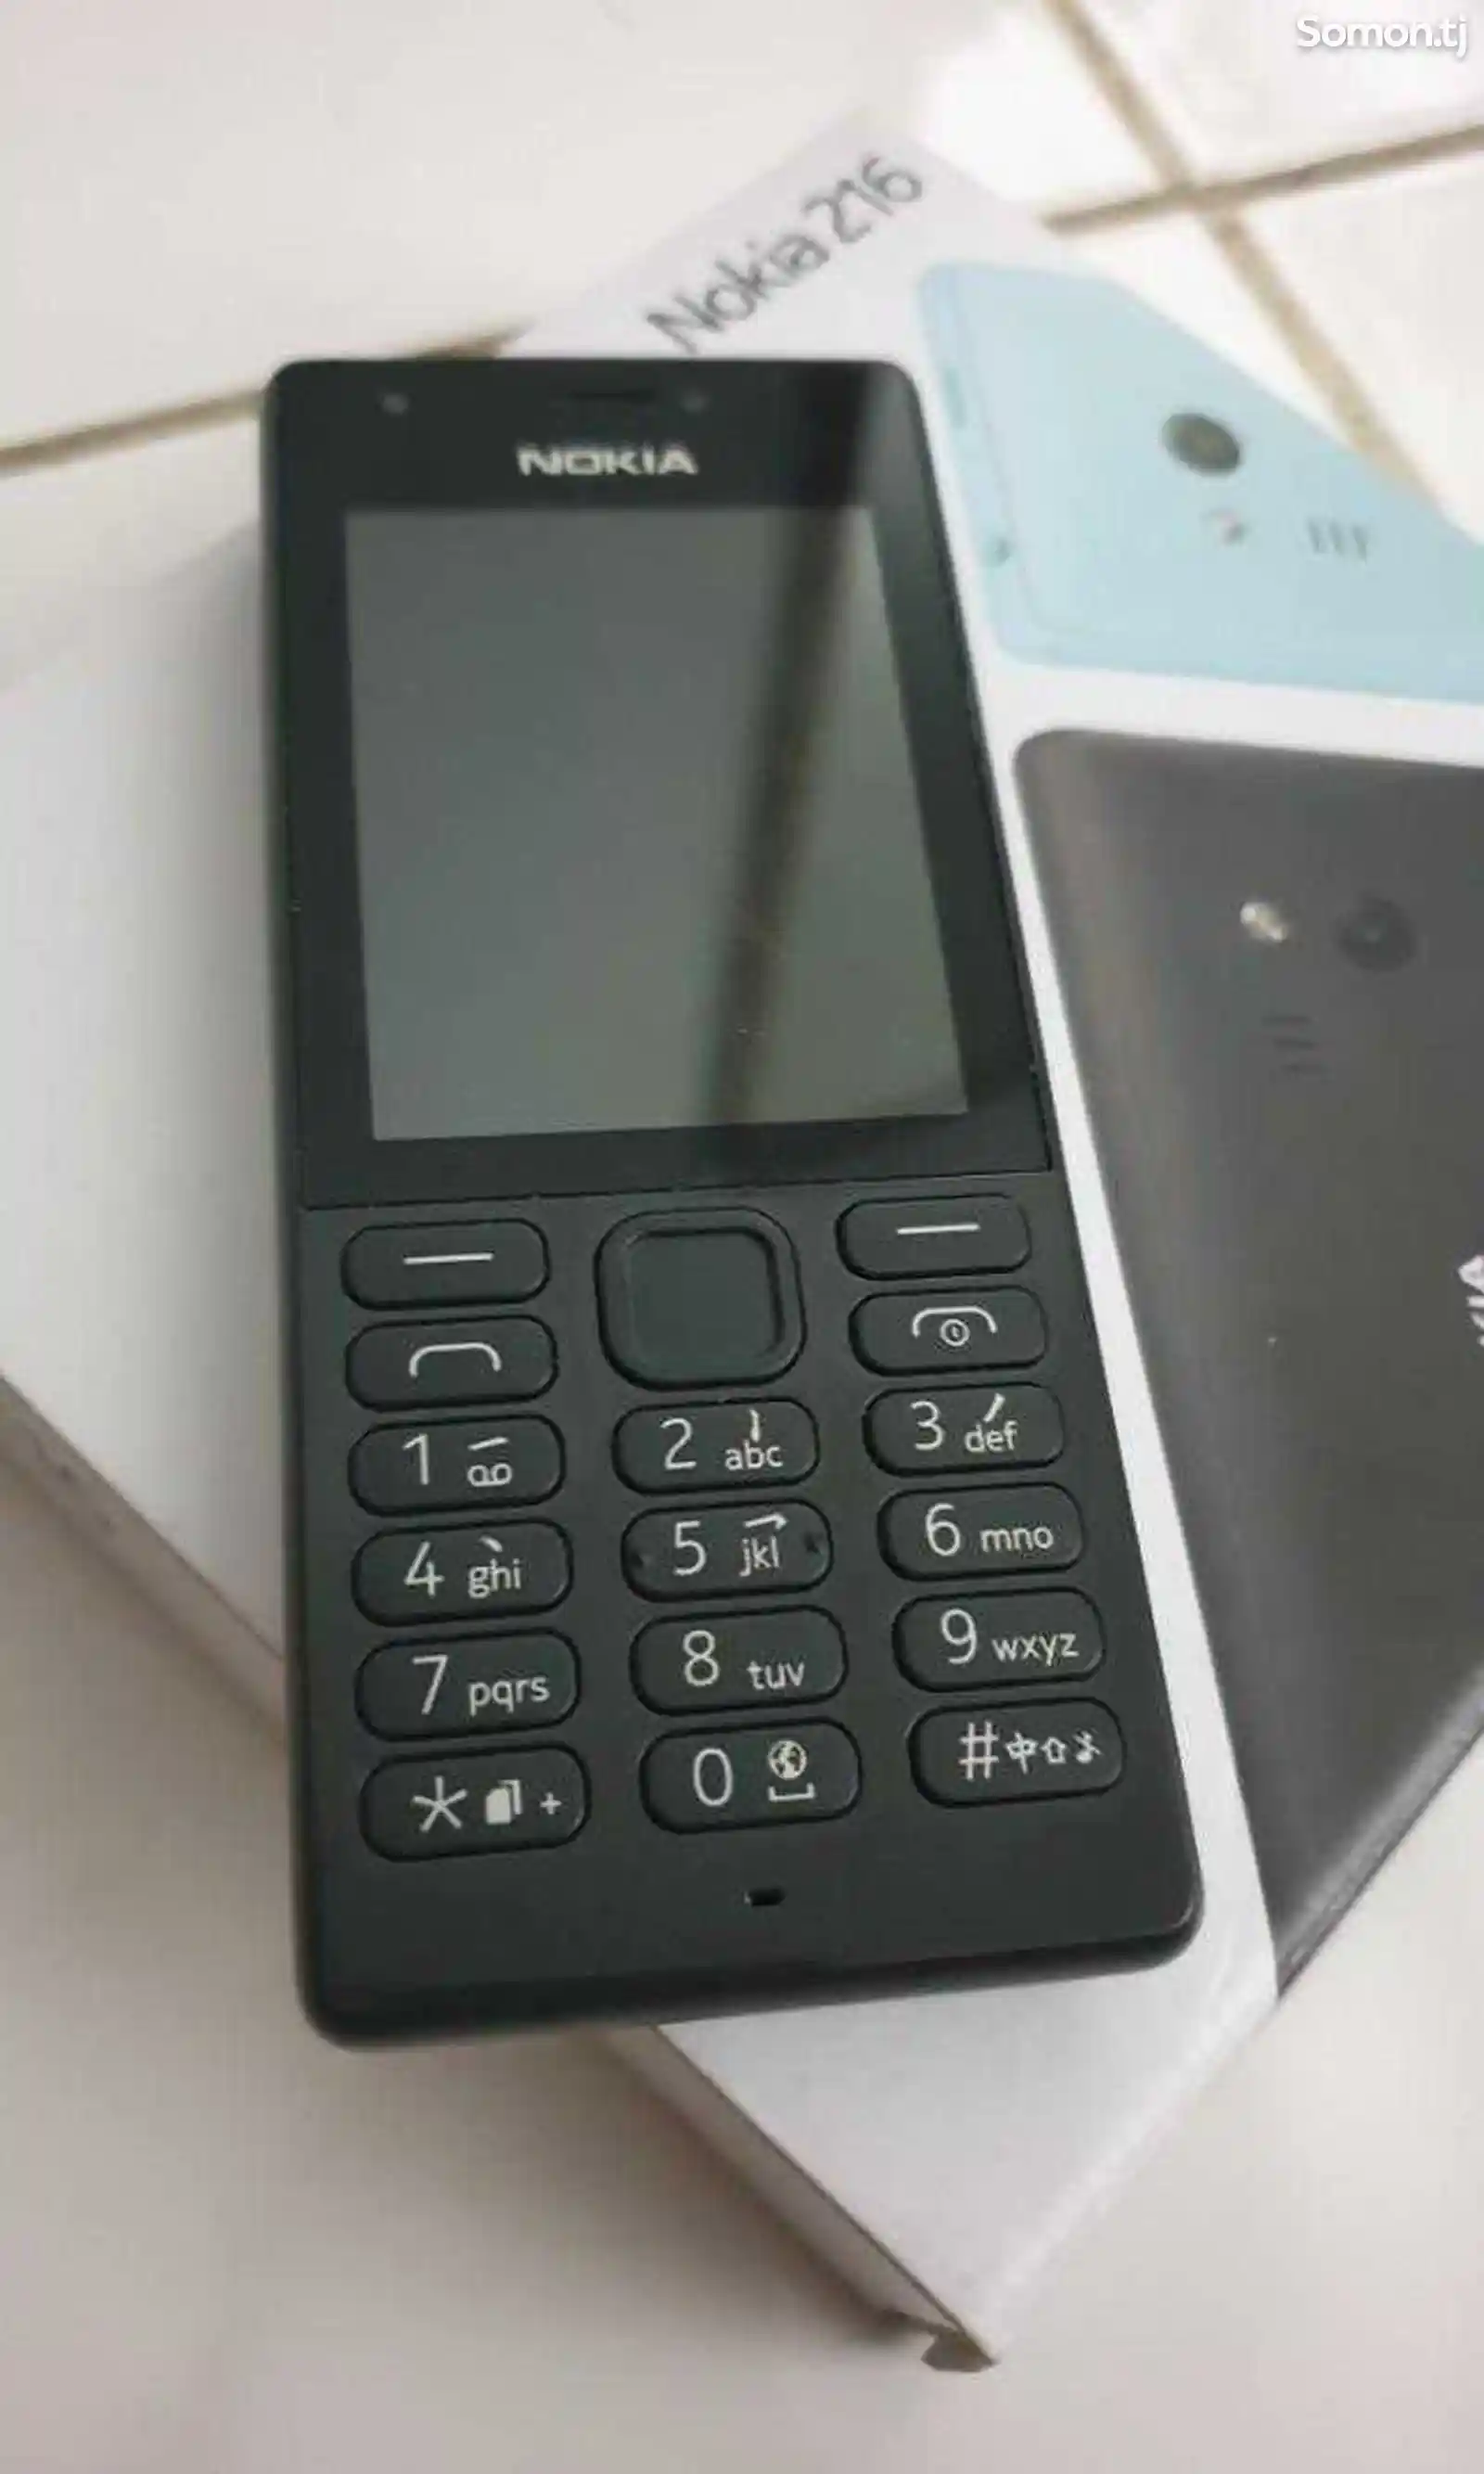 Nokia 216-3